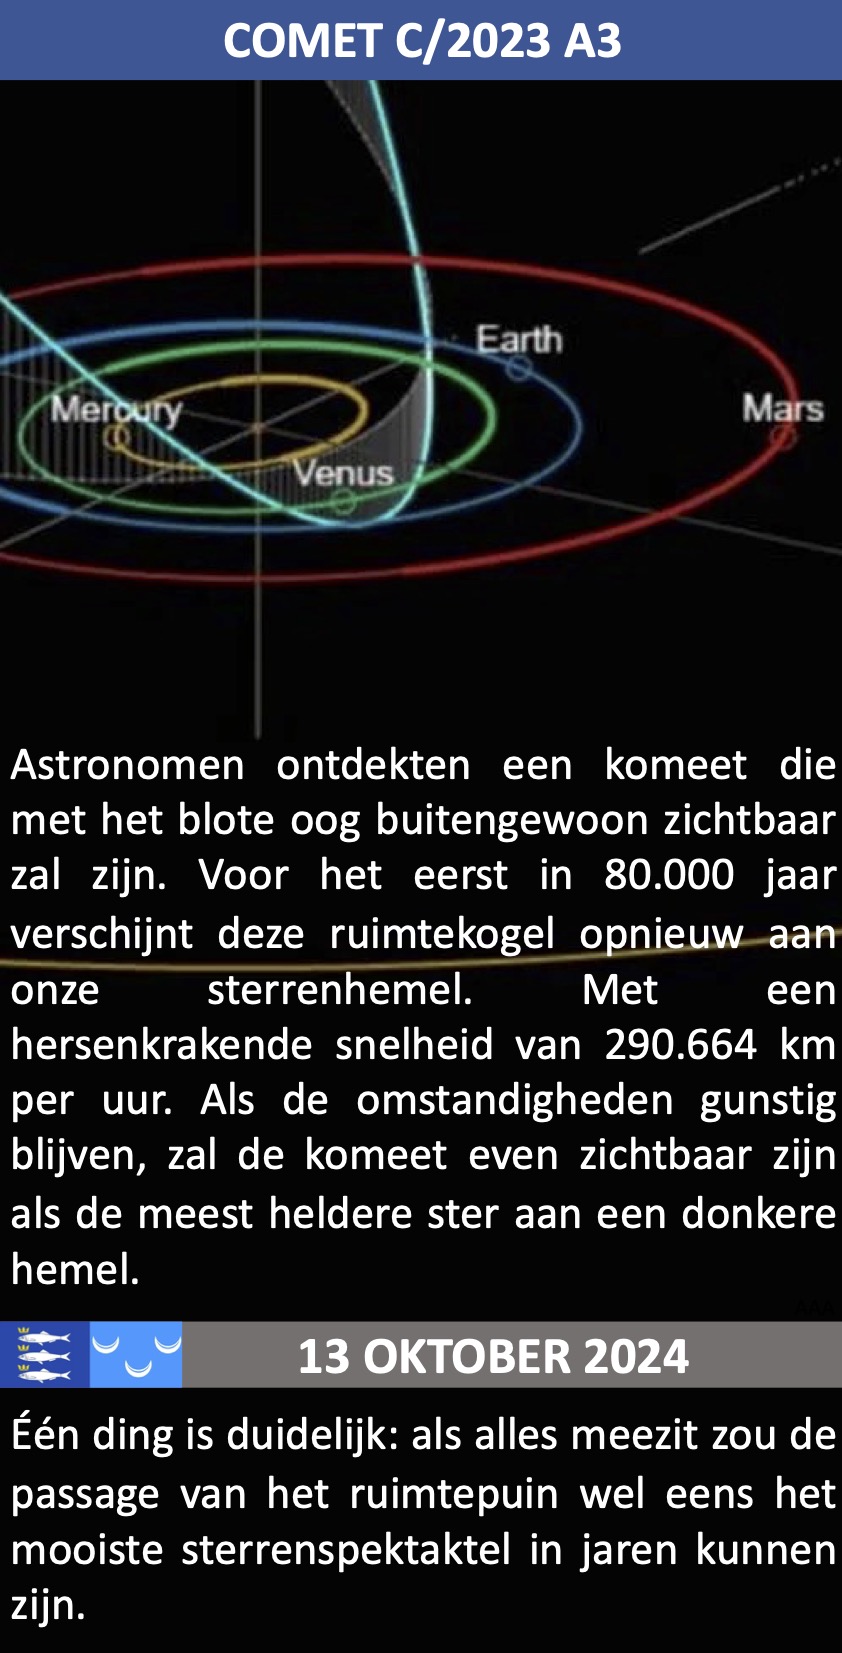 Komeet Comet C 2023 A3 13 oktober 2024